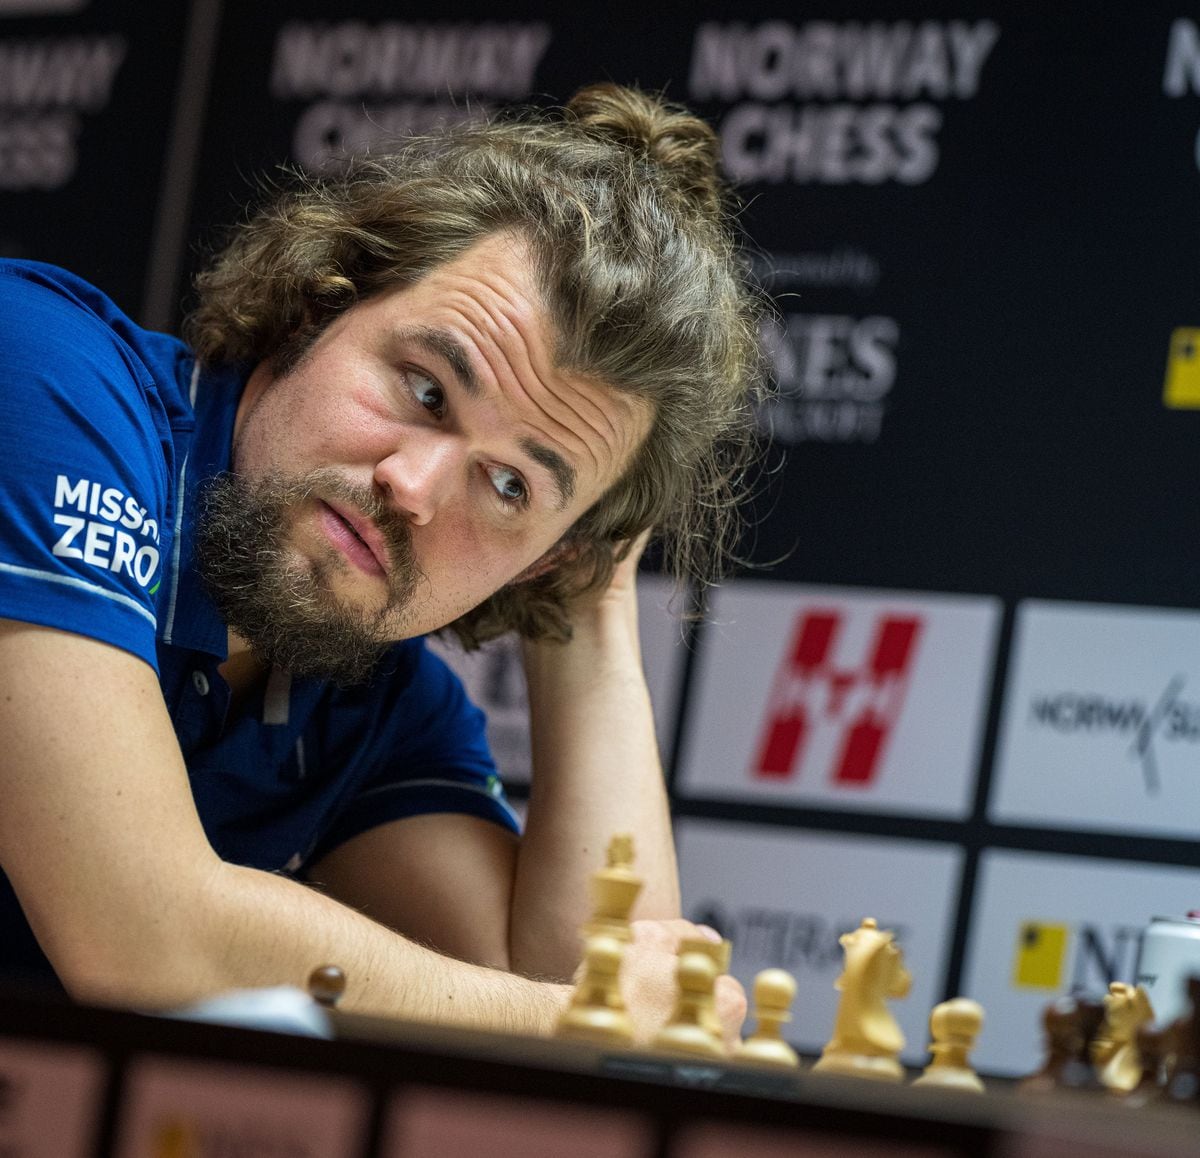 Hikaru Nakamura gana el torneo Norway Chess 2023